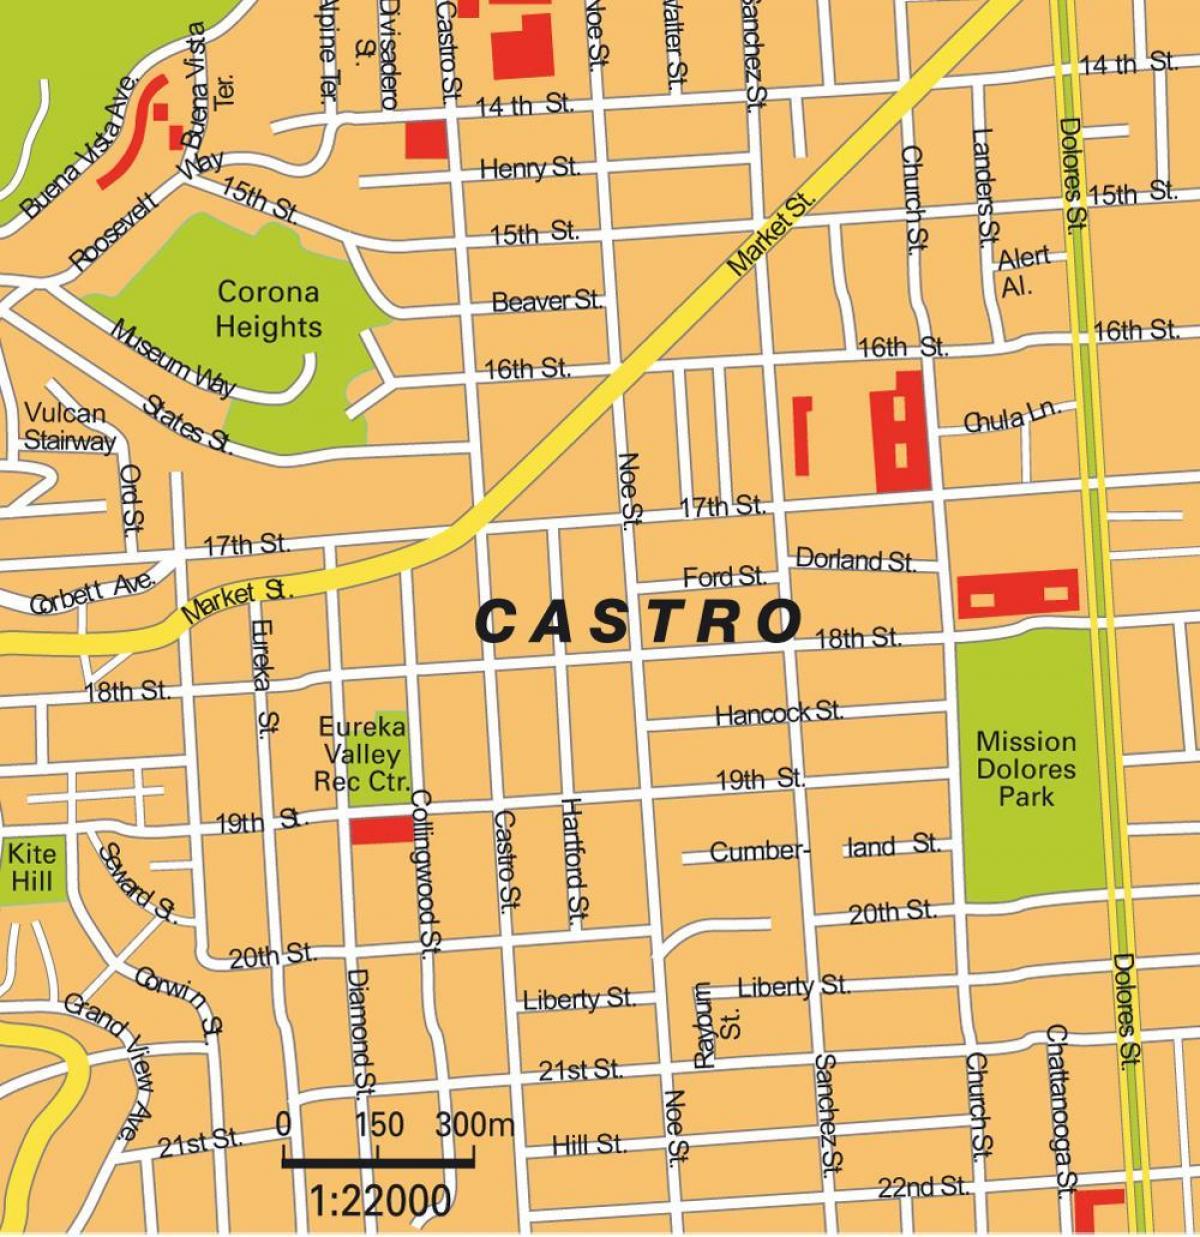 mapa del districte de castro de San Francisco